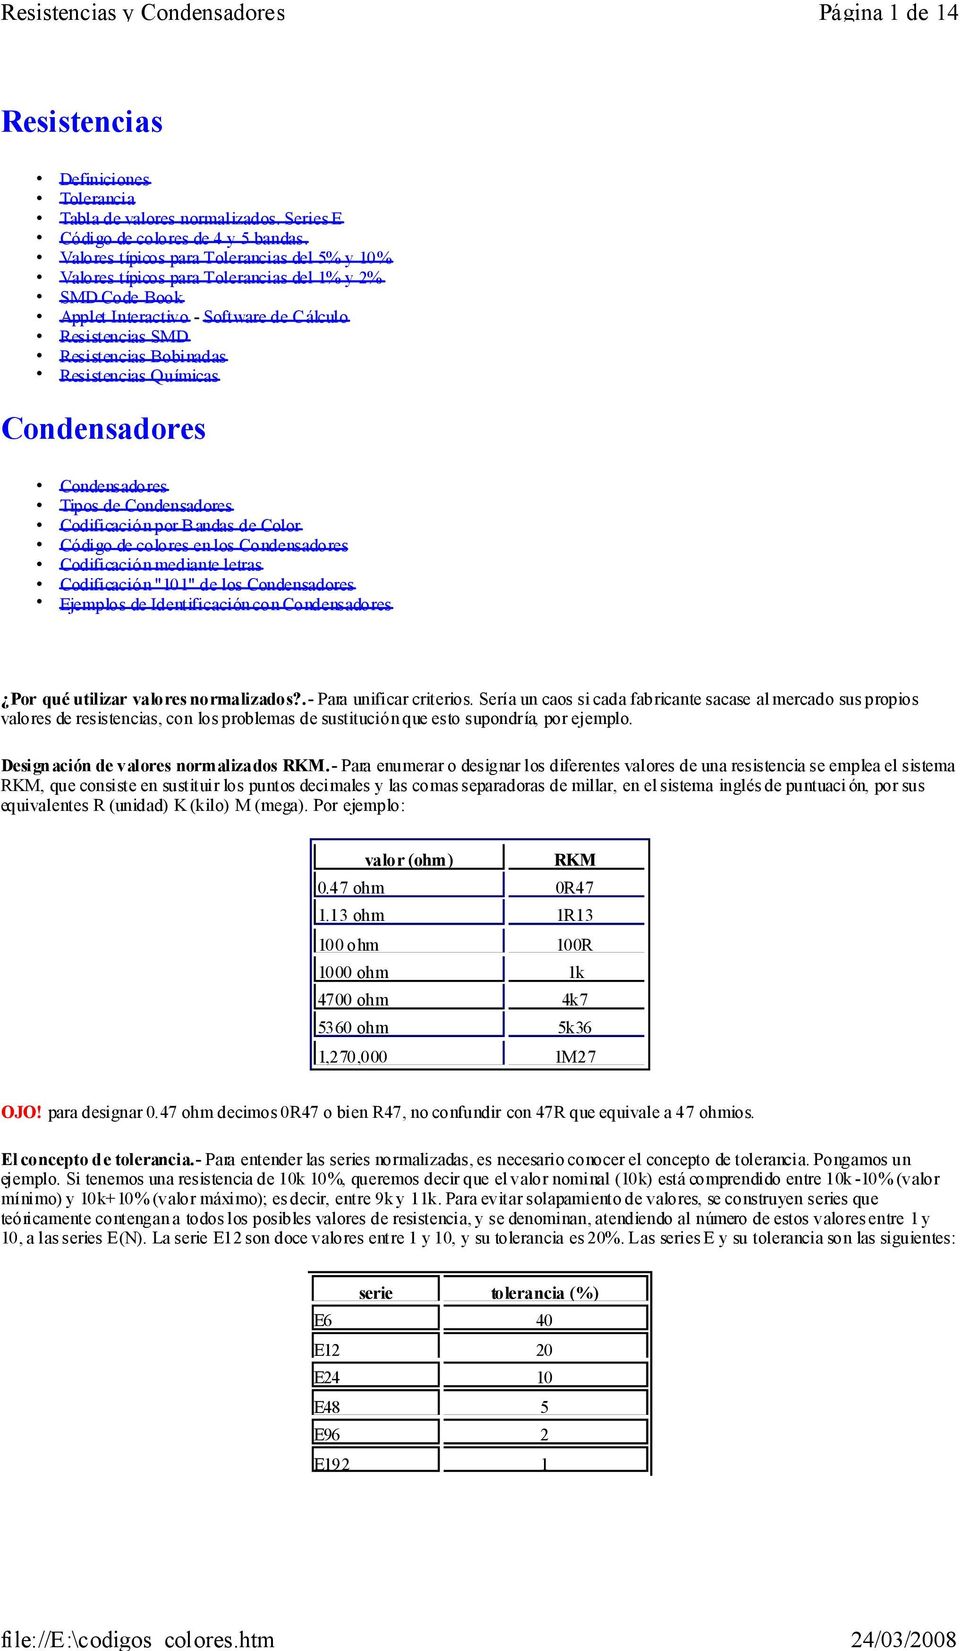 Químicas Condensadores Condensadores Tipos de Condensadores Codificación por Bandas de Color Código de colores en los Condensadores Codificación mediante letras Codificación "101" de los